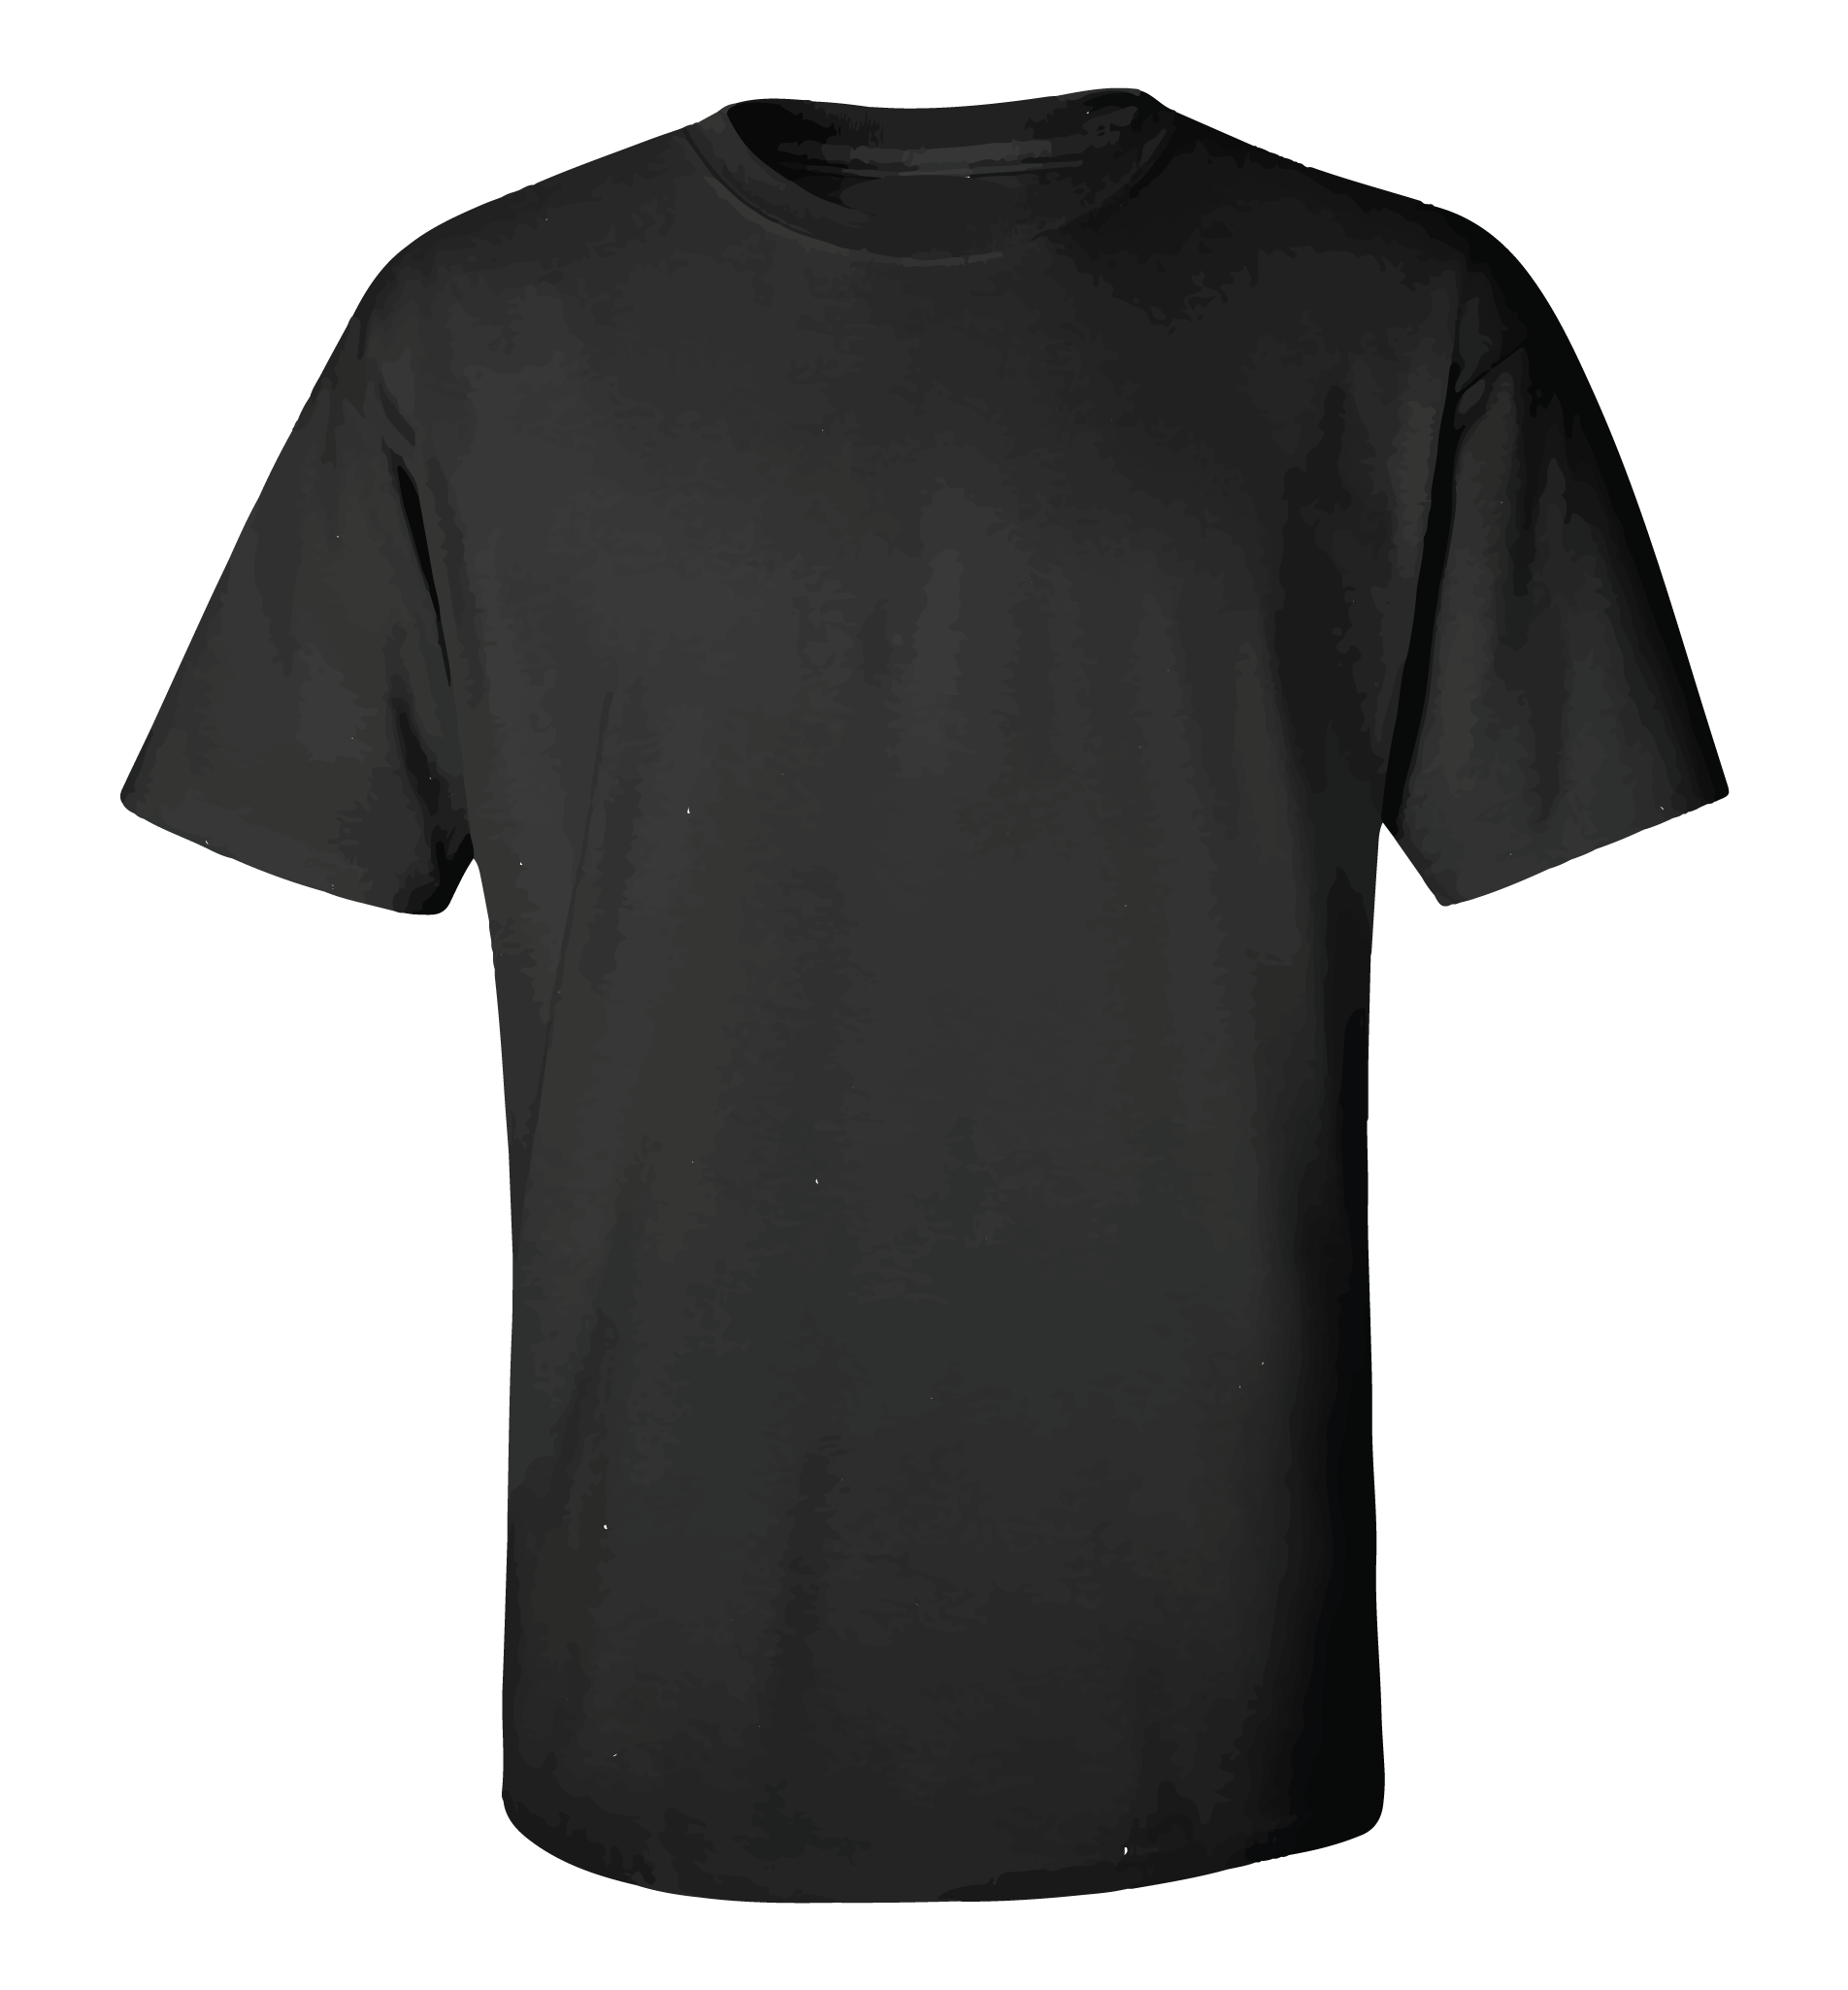 Black-t-shirt